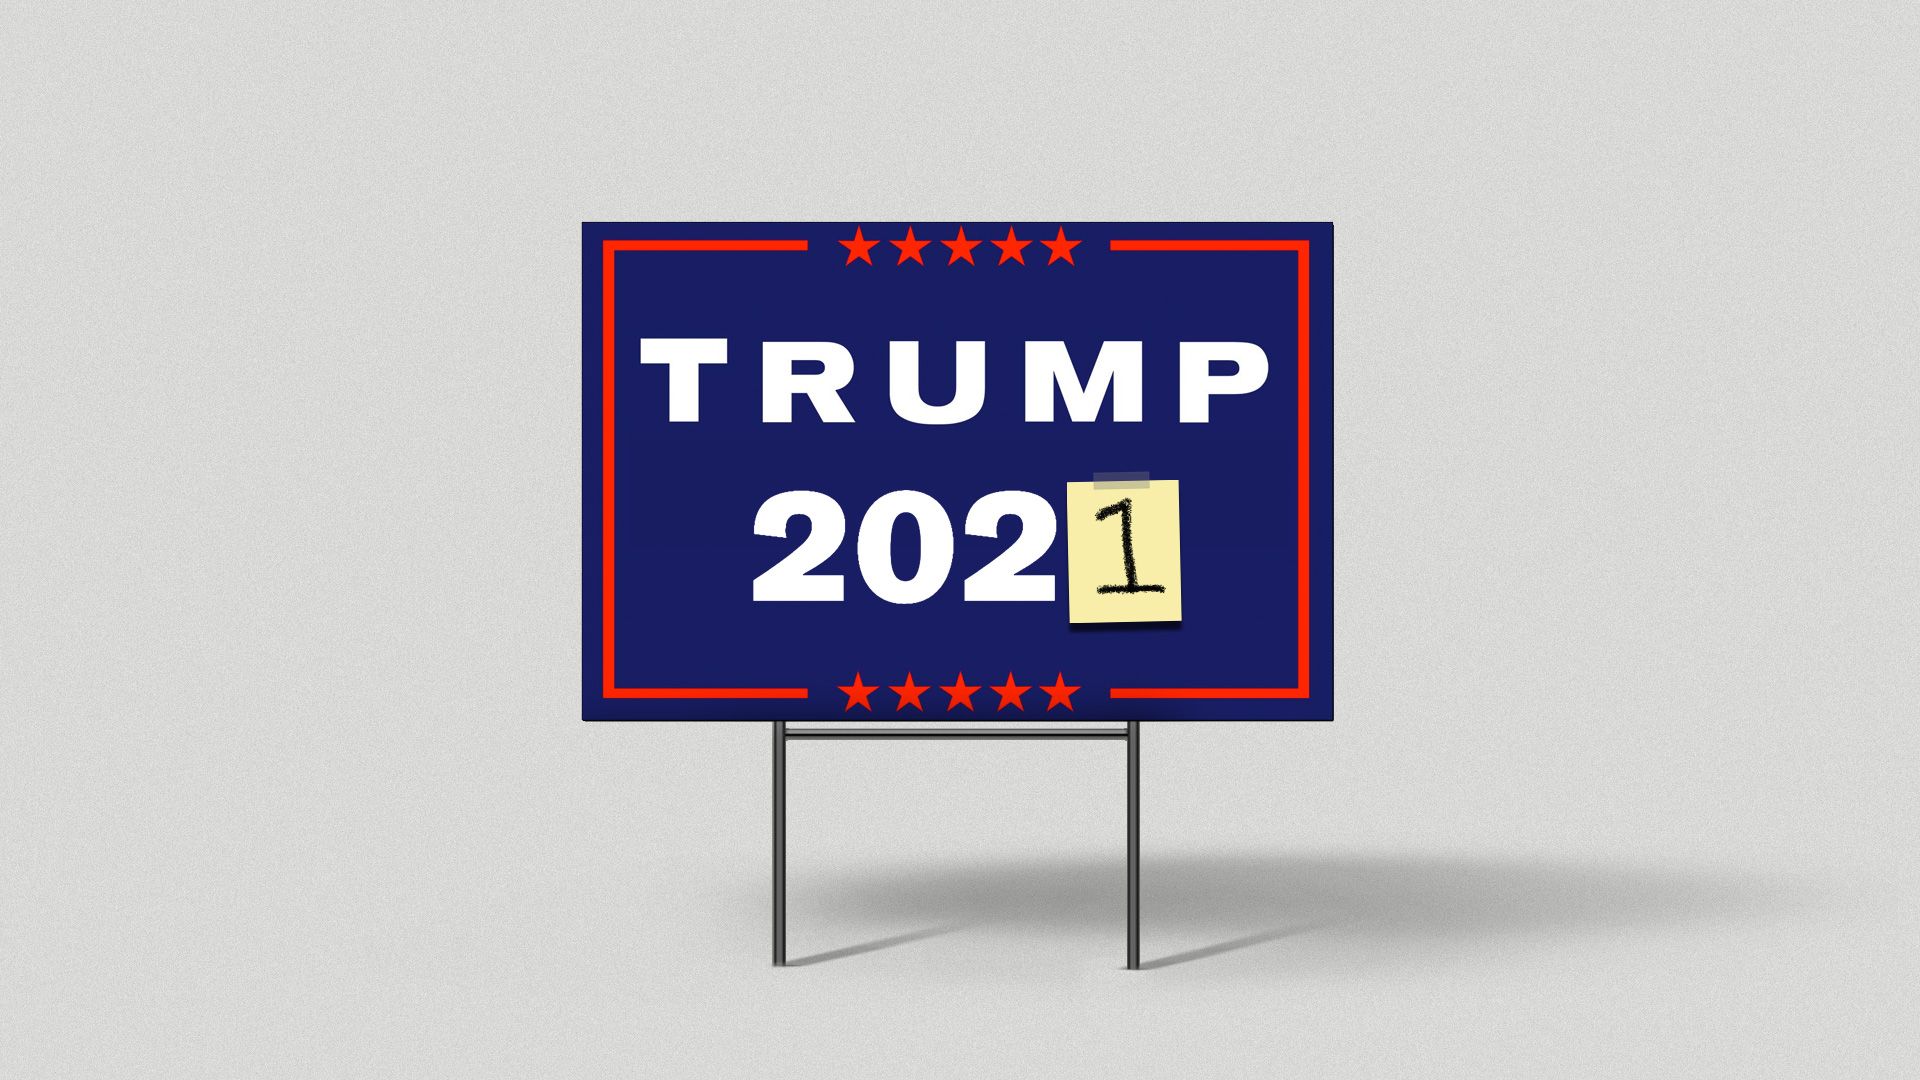 A Trump 2021 yard sign